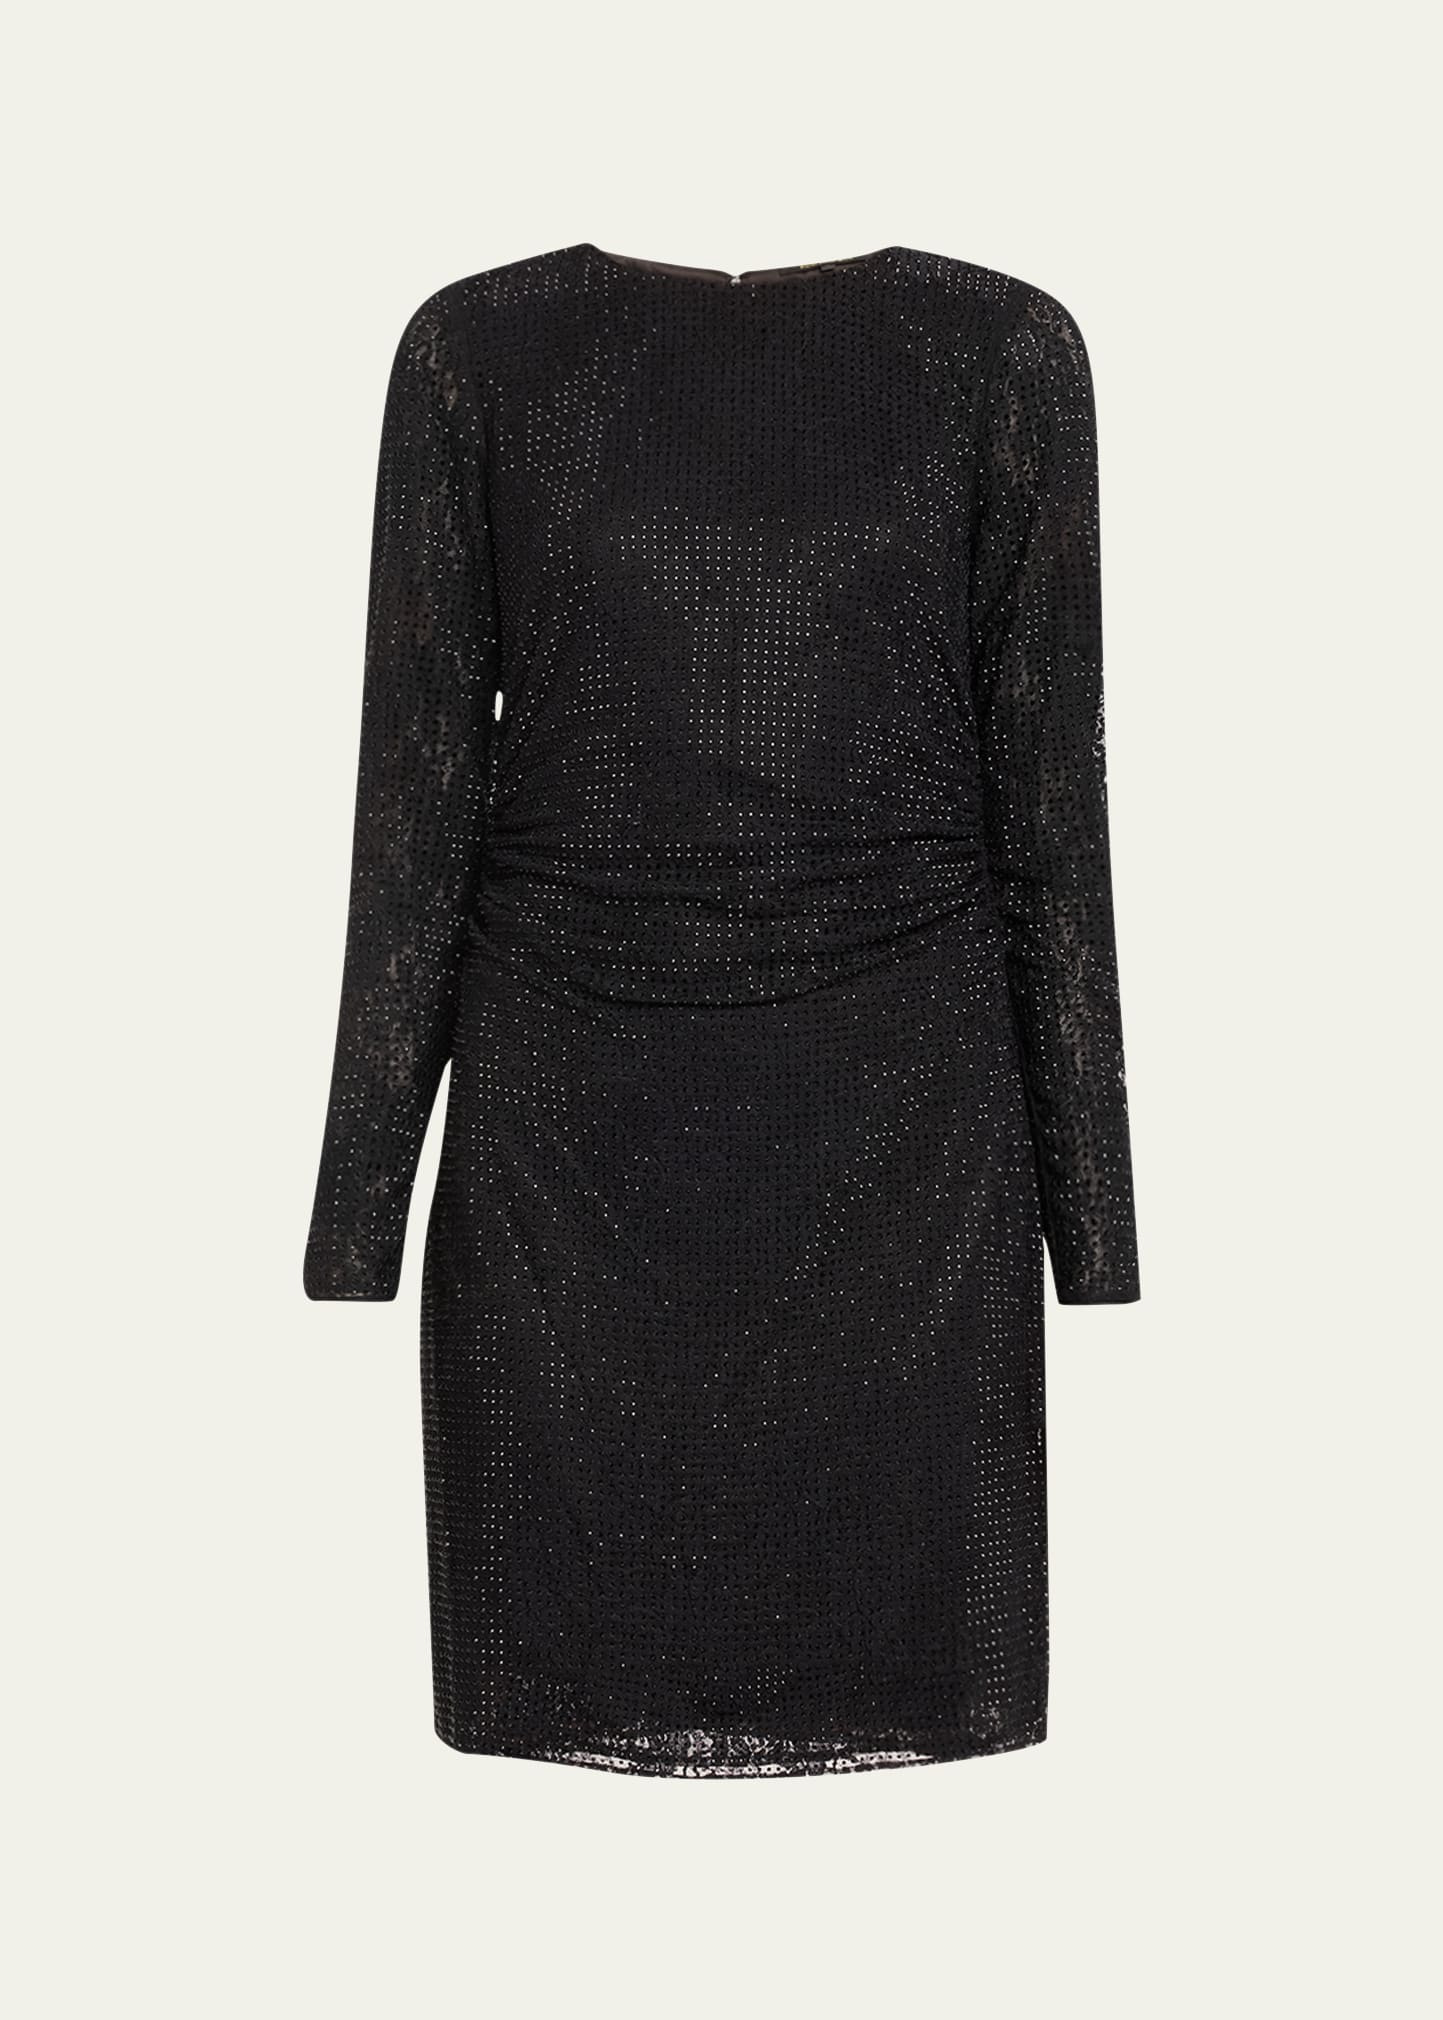 Kobi Halperin Sloane Ruched Rhinestone Mini Dress In Black